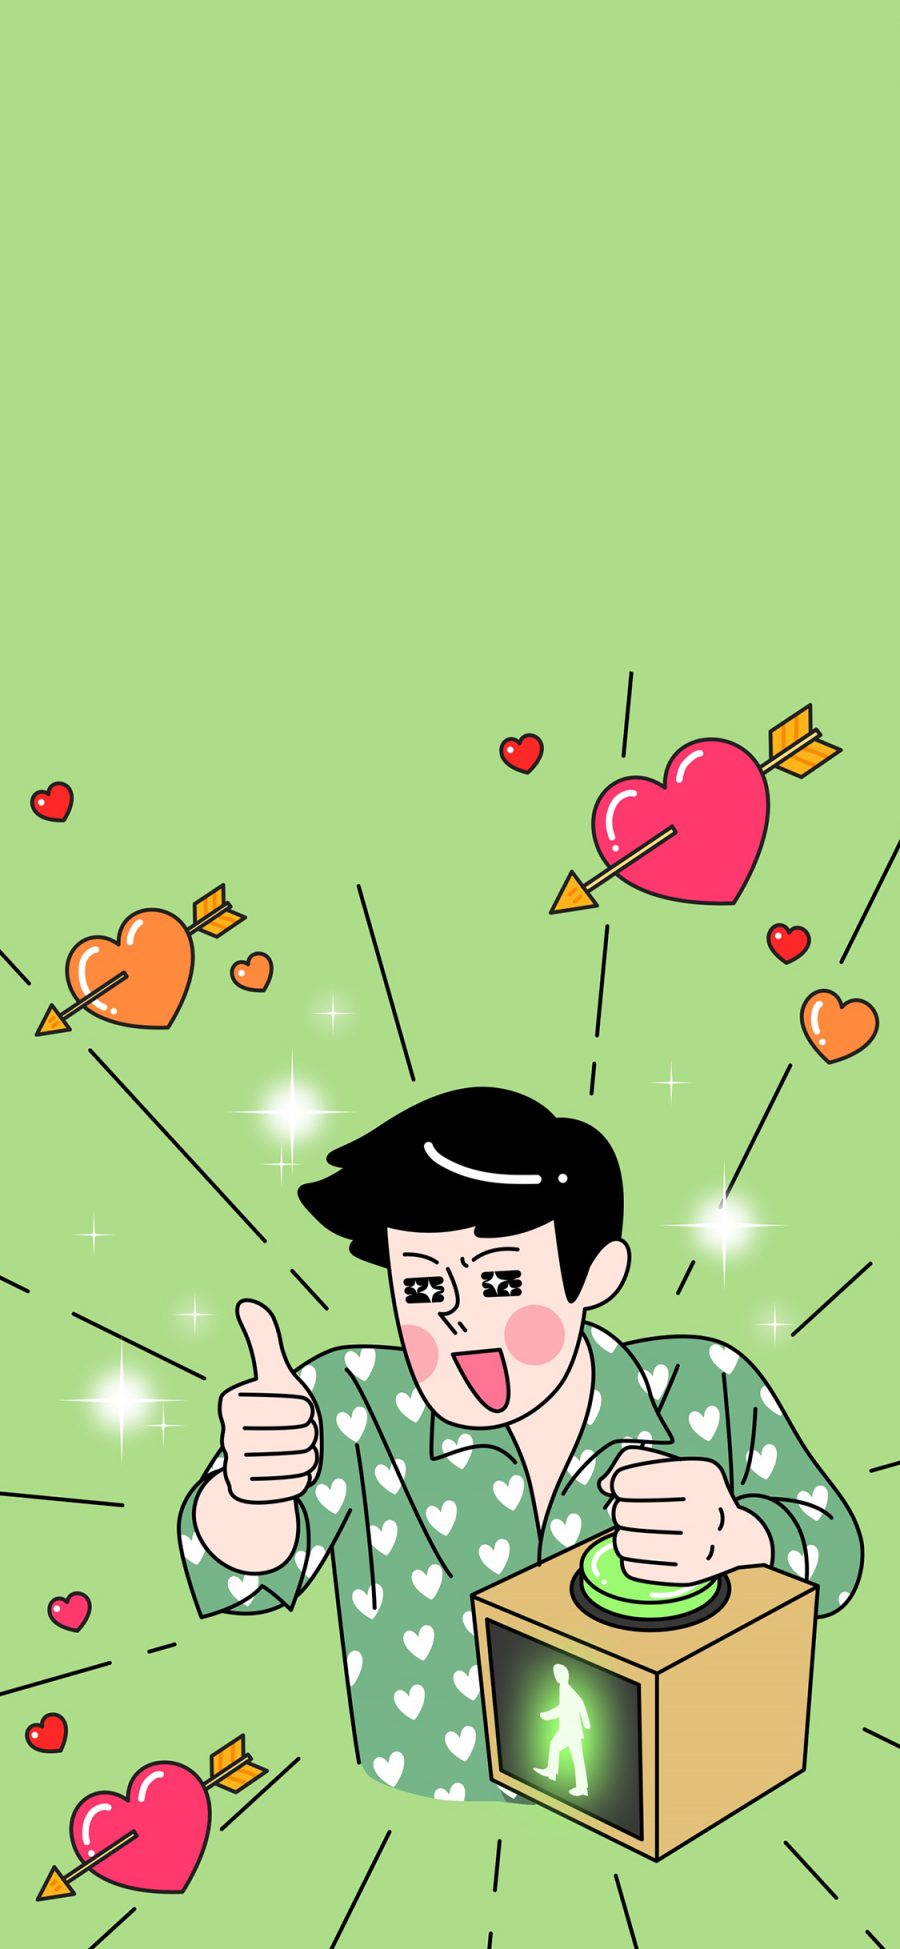 [2436×1125]绿色背景 卡通 男孩 爱心 苹果手机动漫壁纸图片